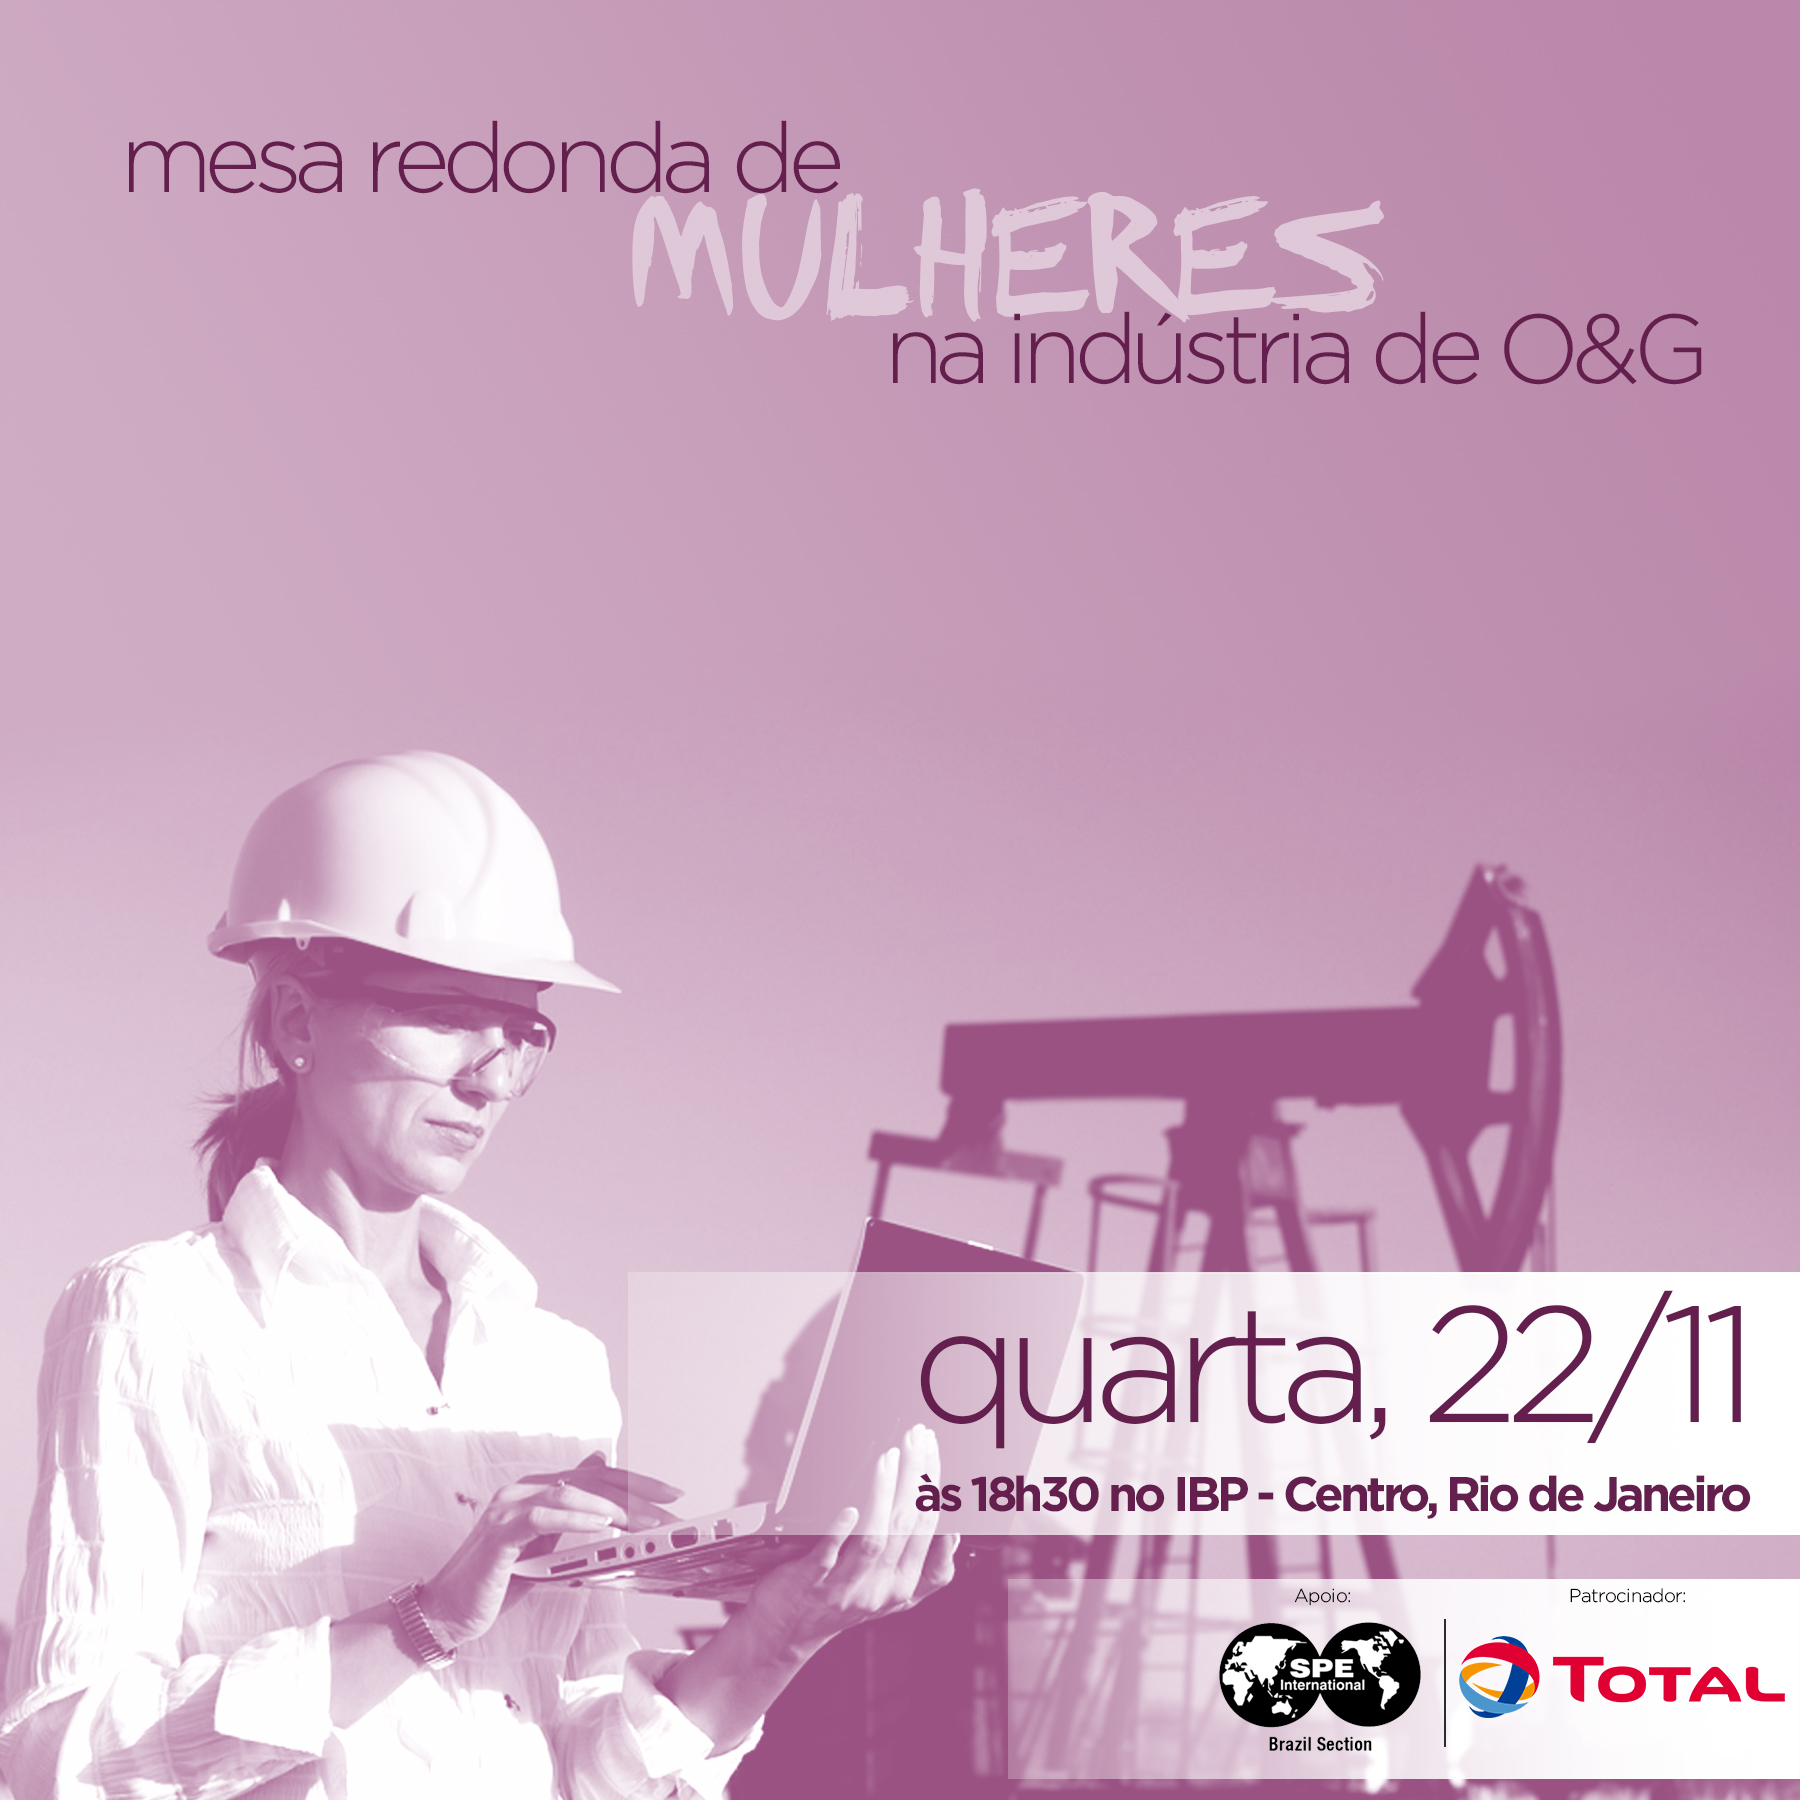 Evento: Mesa redonda de mulheres na indústria de O&G